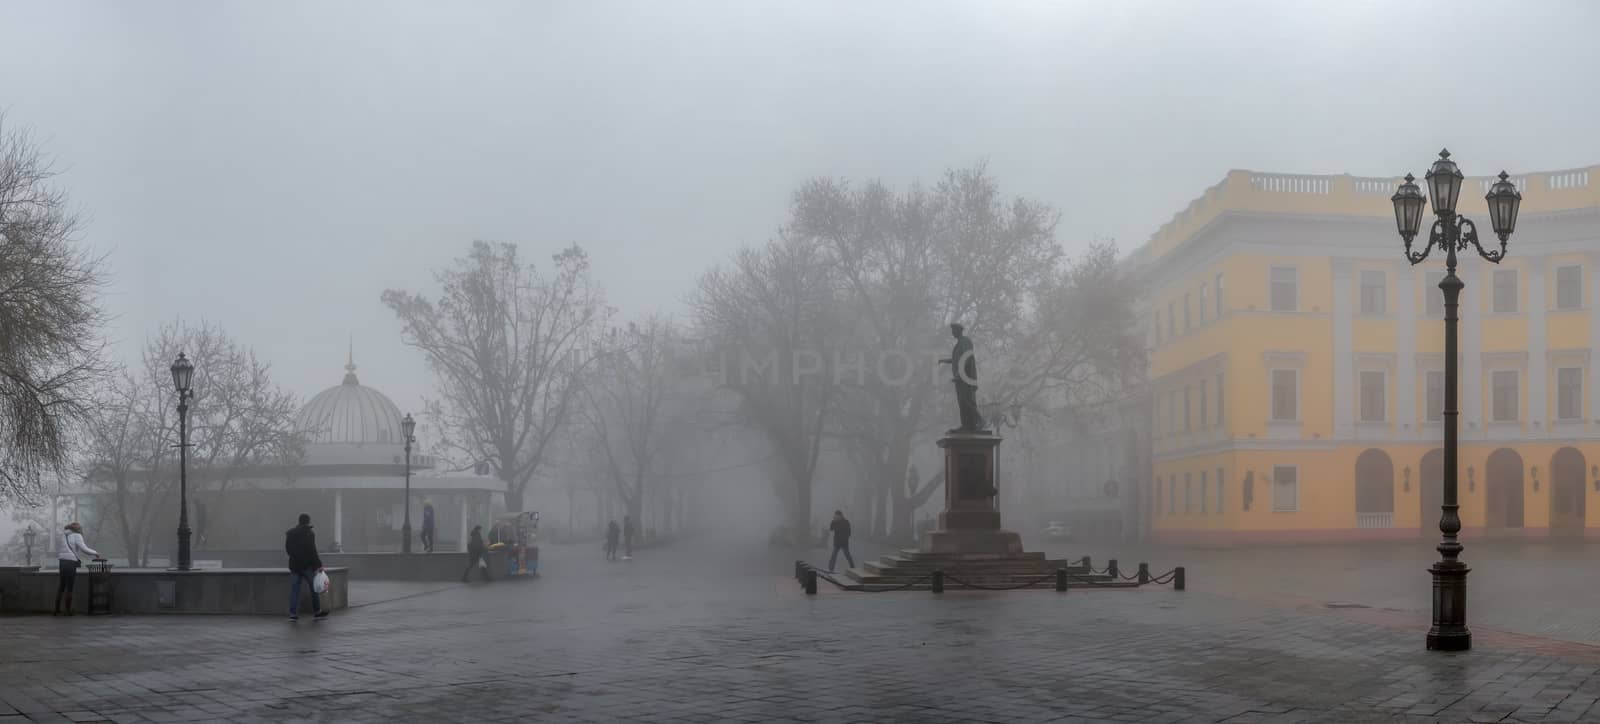 Primorsky Boulevard in Odessa, Ukraine by Multipedia